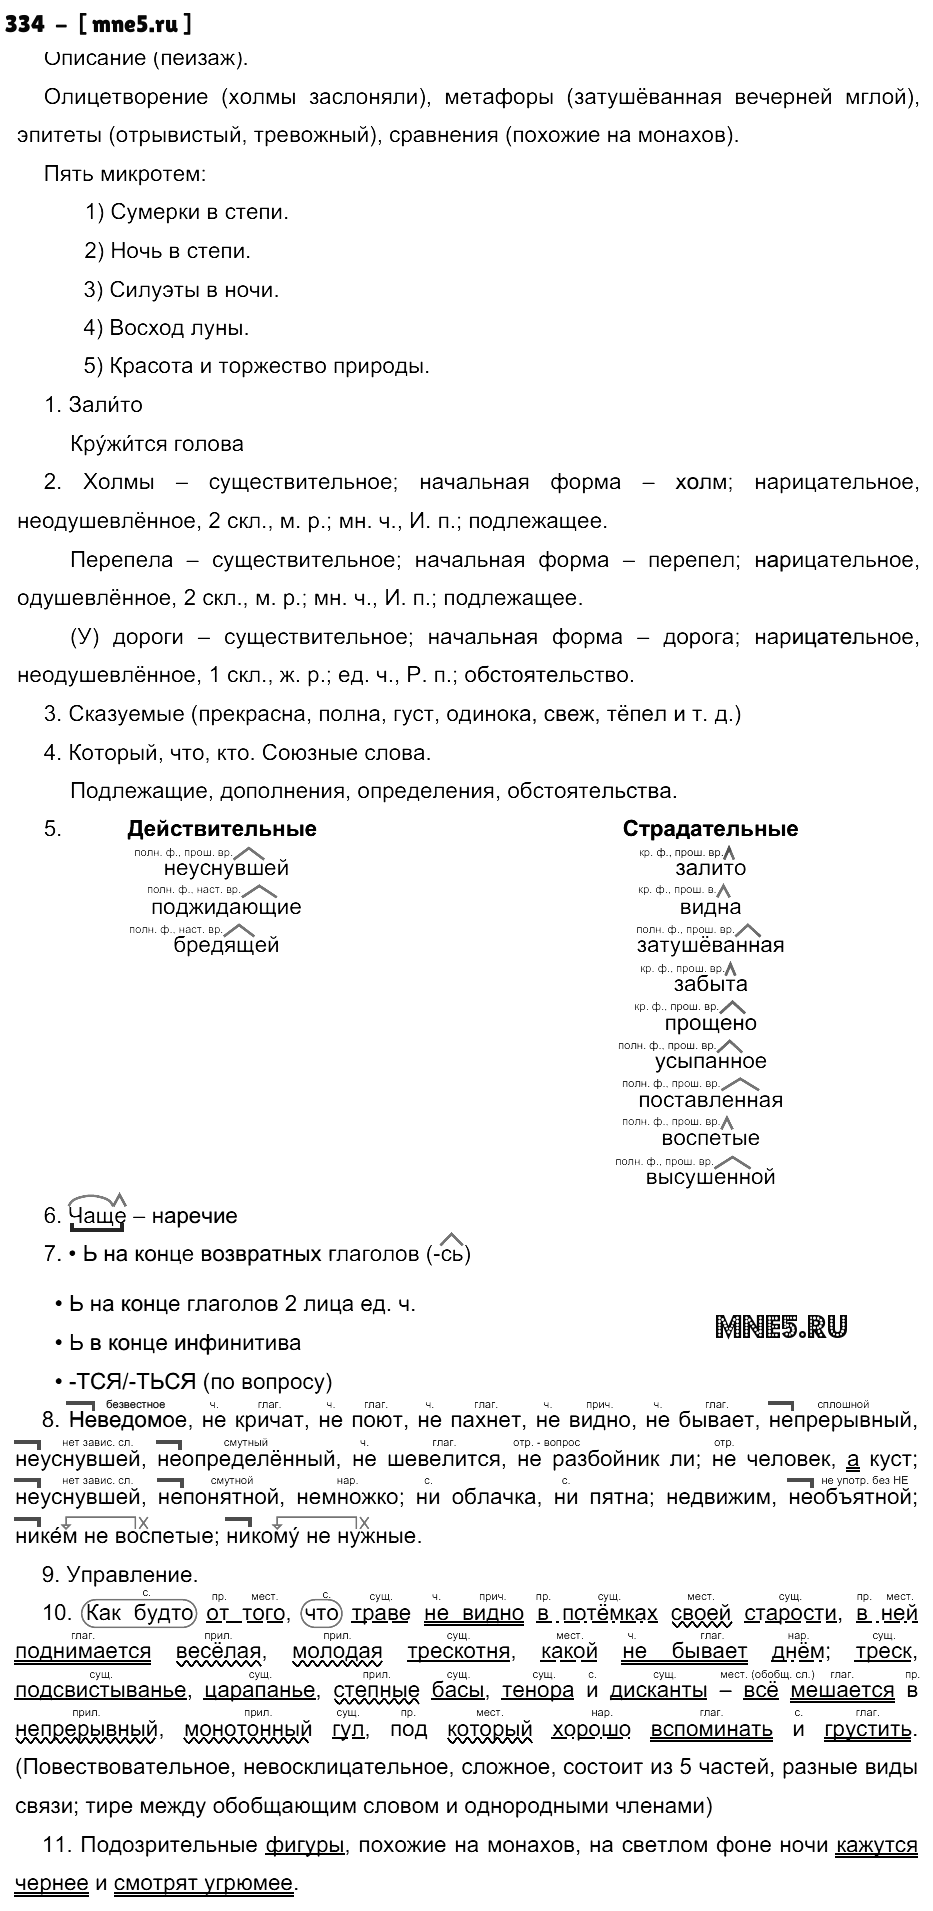 ГДЗ Русский язык 10 класс - 334